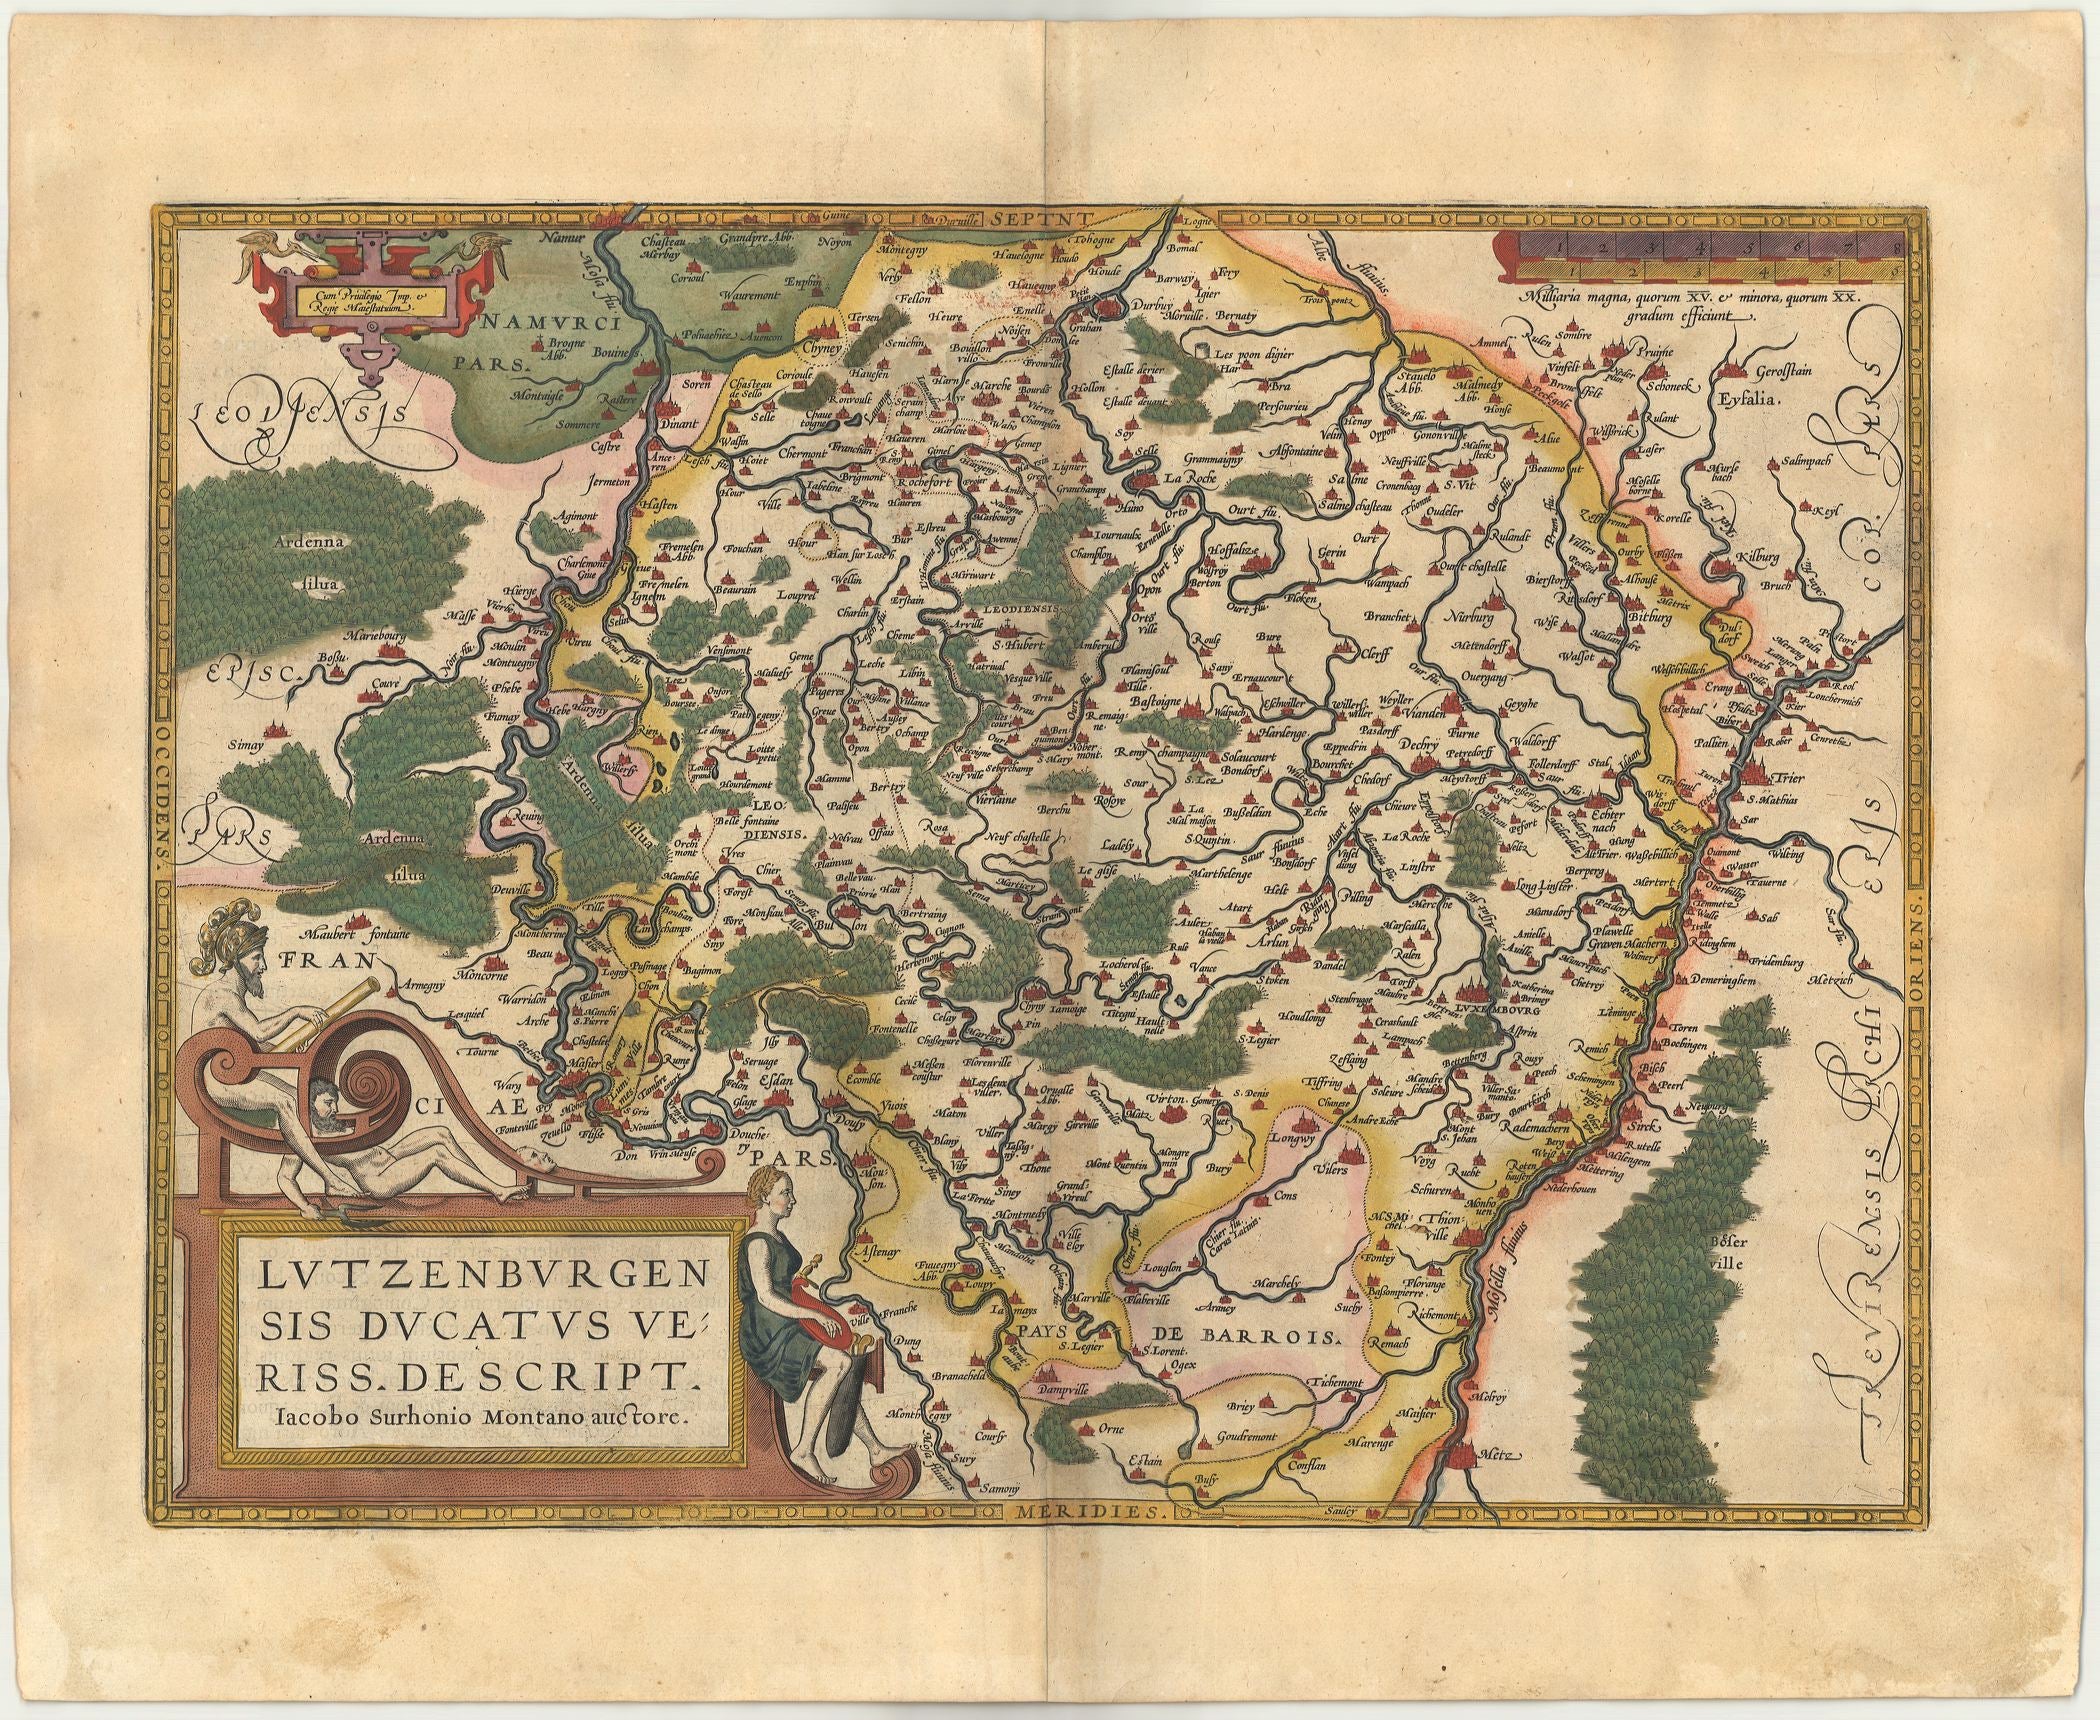 Ortelius, Abraham: Lutzenburgensis Ducatus Veriss. Escript. 1612